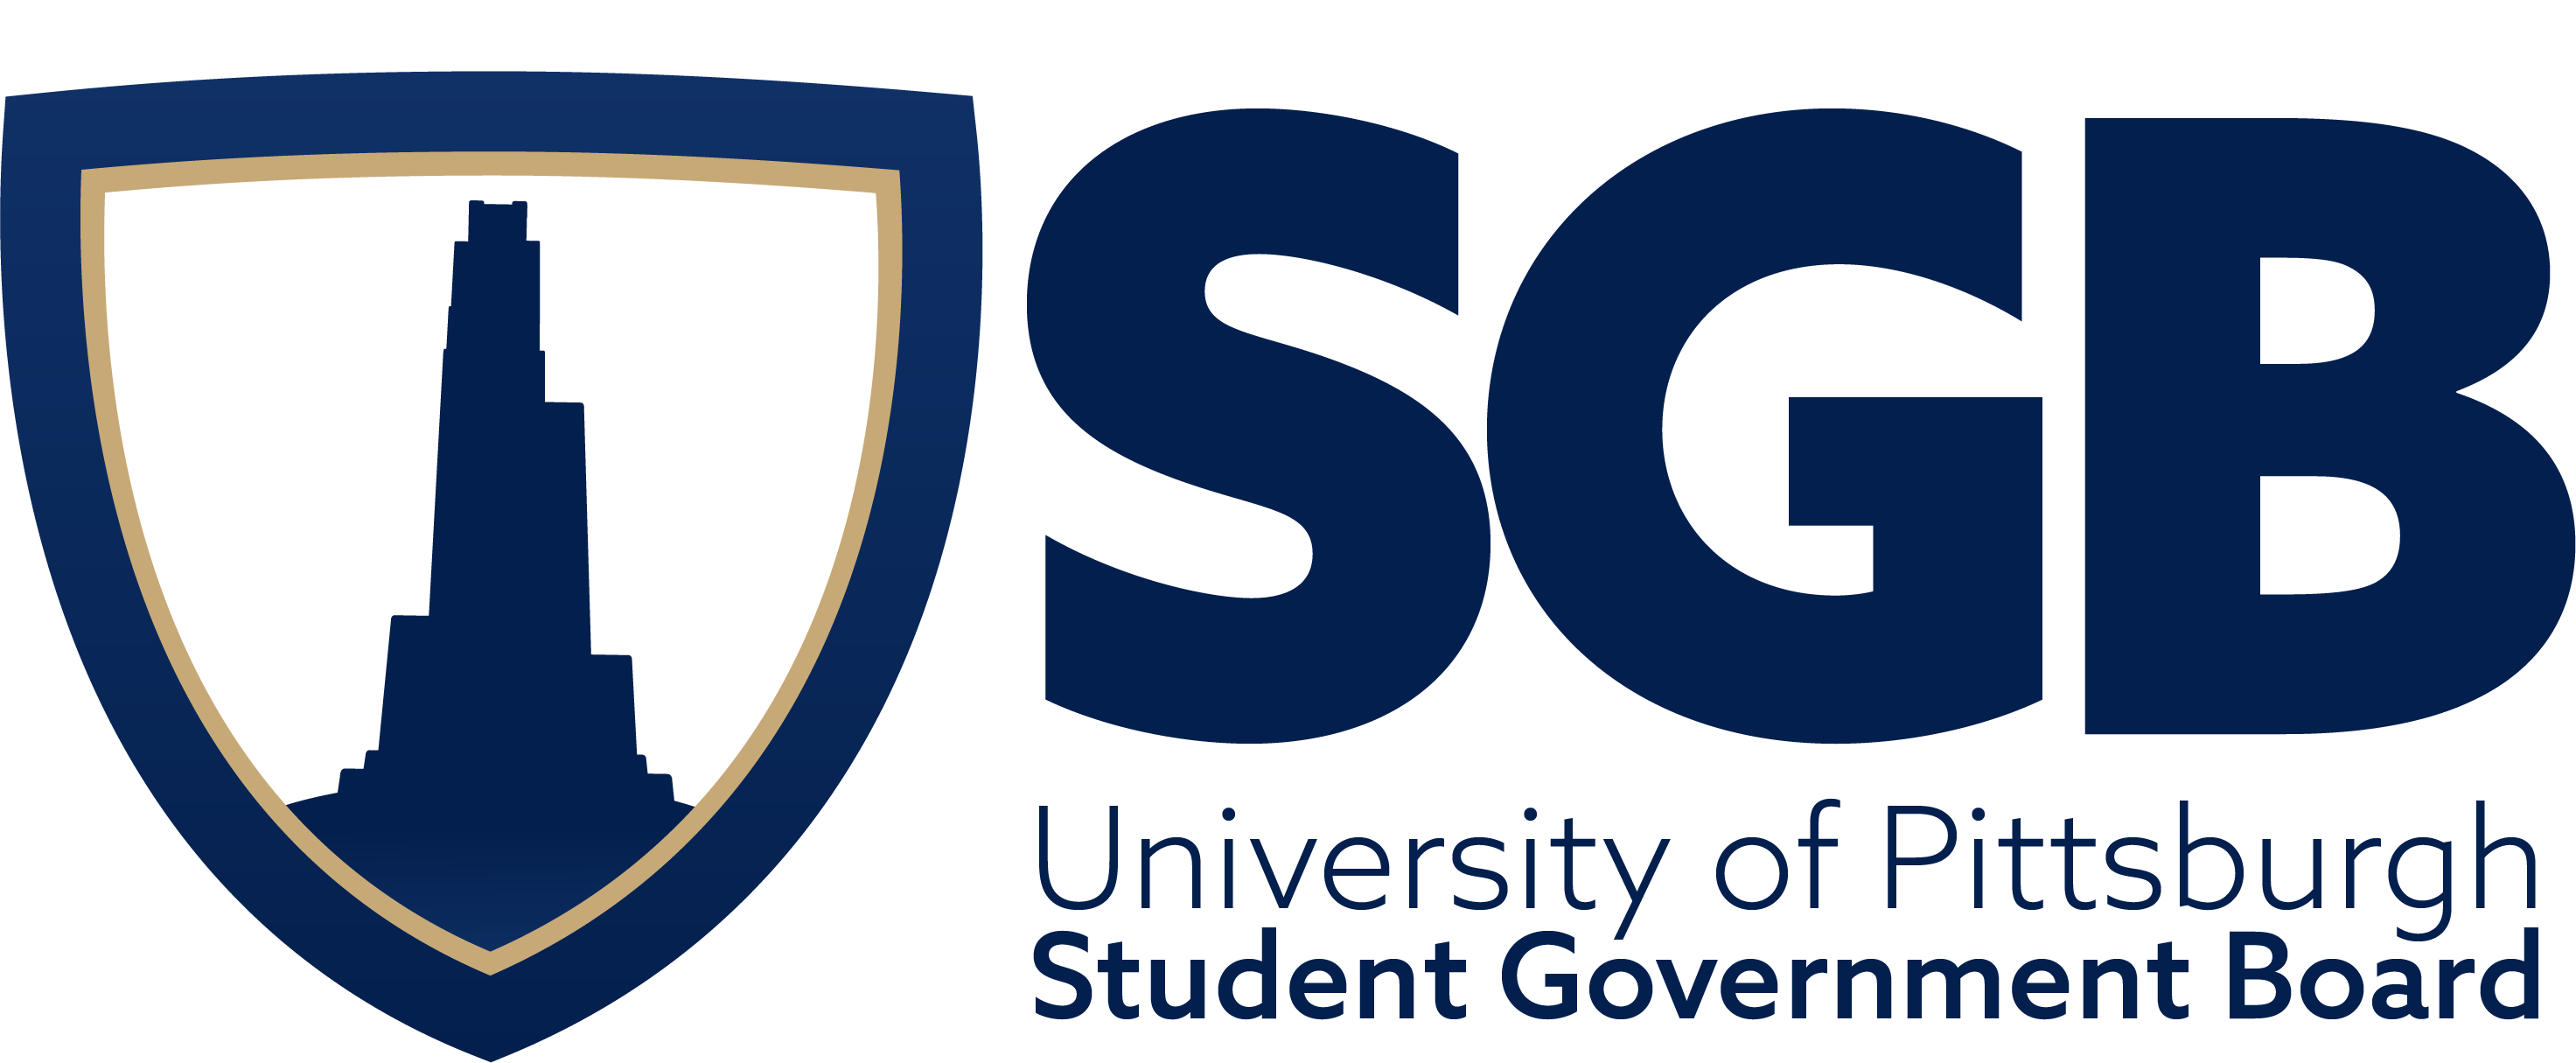 Sorc Logo - Student Government Board